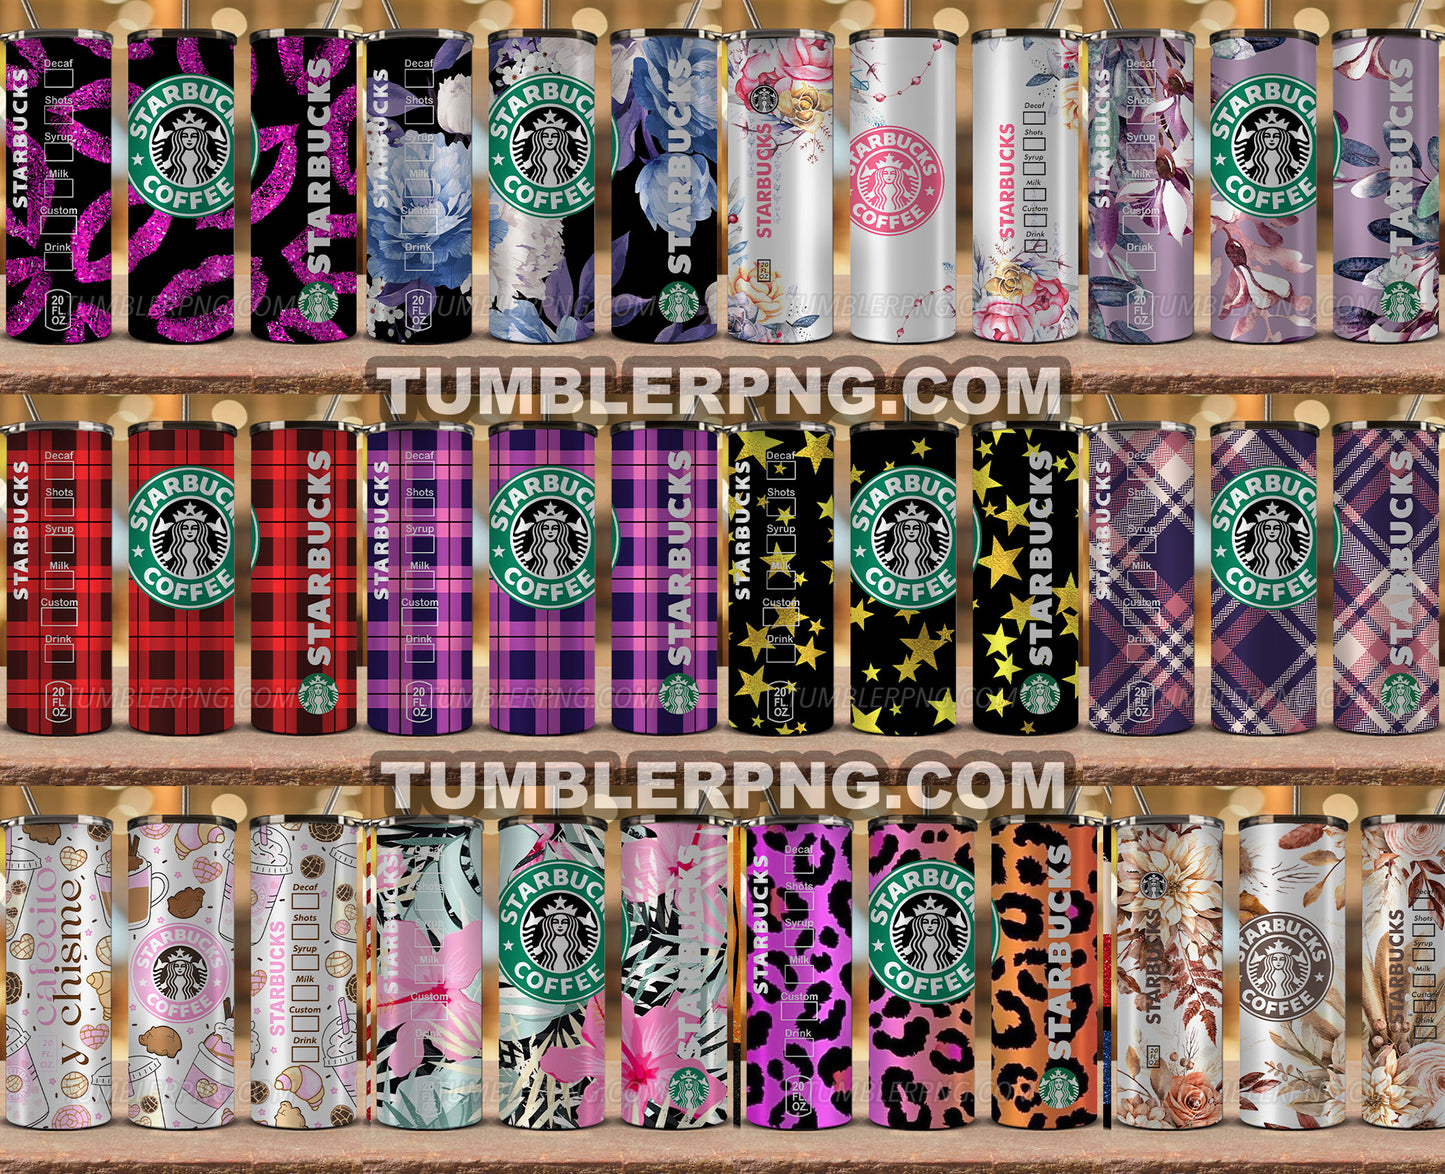 Bundle Starbucks Tumbler Png, Starbucks Glitter Sublimation, Skinny Tumbler 20oz, Skinny Starbucks 38